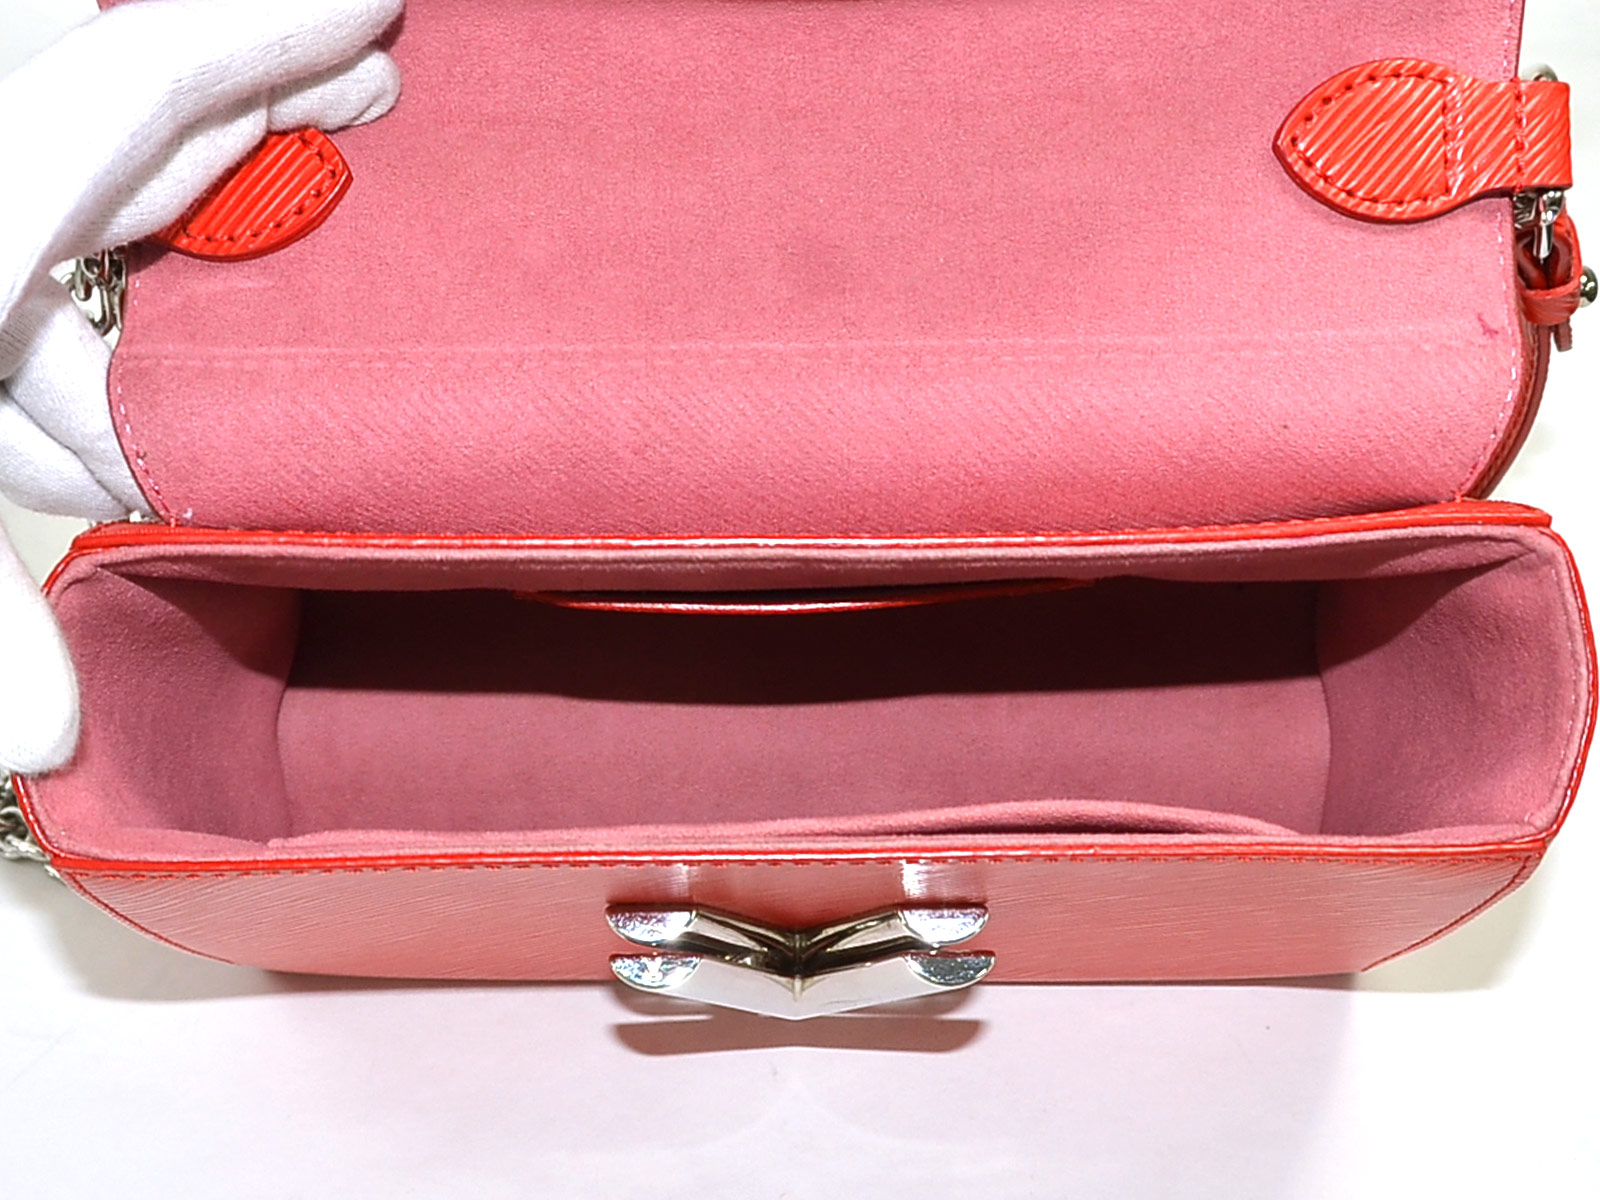 Auth Louis Vuitton Epi Twist MM Chain Shoulder Bag Red/Silver M50523 - 98065d | eBay